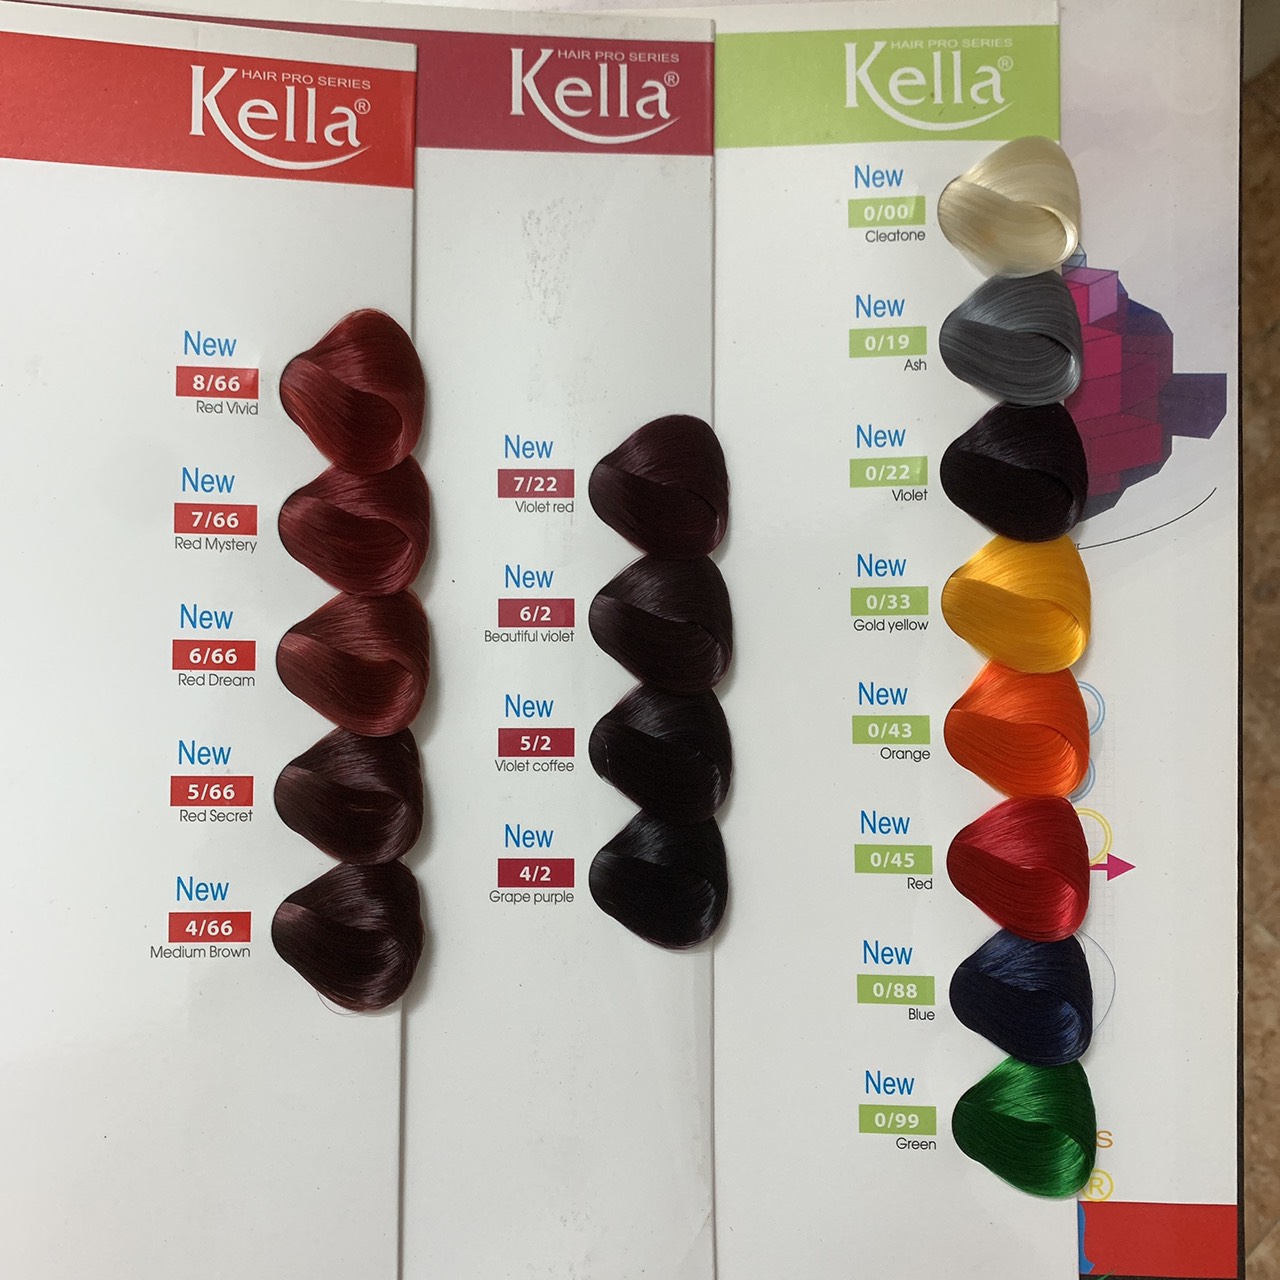 Thuốc nhuộm tóc Kella: Bạn muốn có mái tóc bắt mắt, đầy sức sống? Hãy thử sức với thuốc nhuộm tóc Kella - dòng sản phẩm chất lượng, đem lại màu sắc rực rỡ và bền đẹp cho tóc của bạn. Đảm bảo không gây hại cho tóc và da đầu, Kella sẽ làm hài lòng cả những khách hàng khó tính nhất.